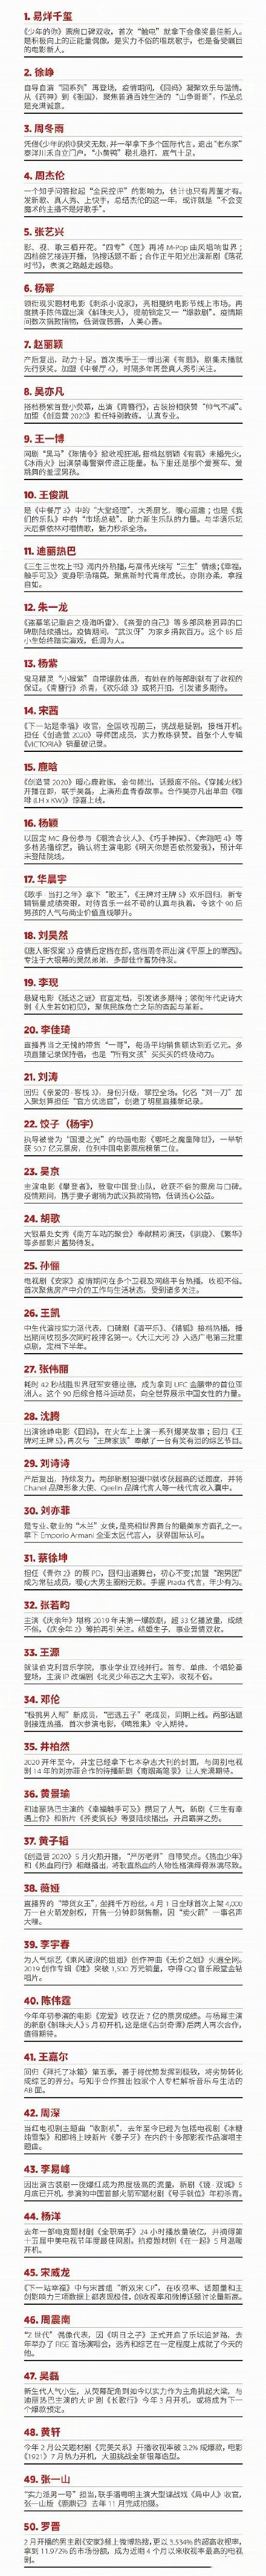 易烊千玺登顶福布斯中国名人榜 2020福布斯中国名人榜都有谁